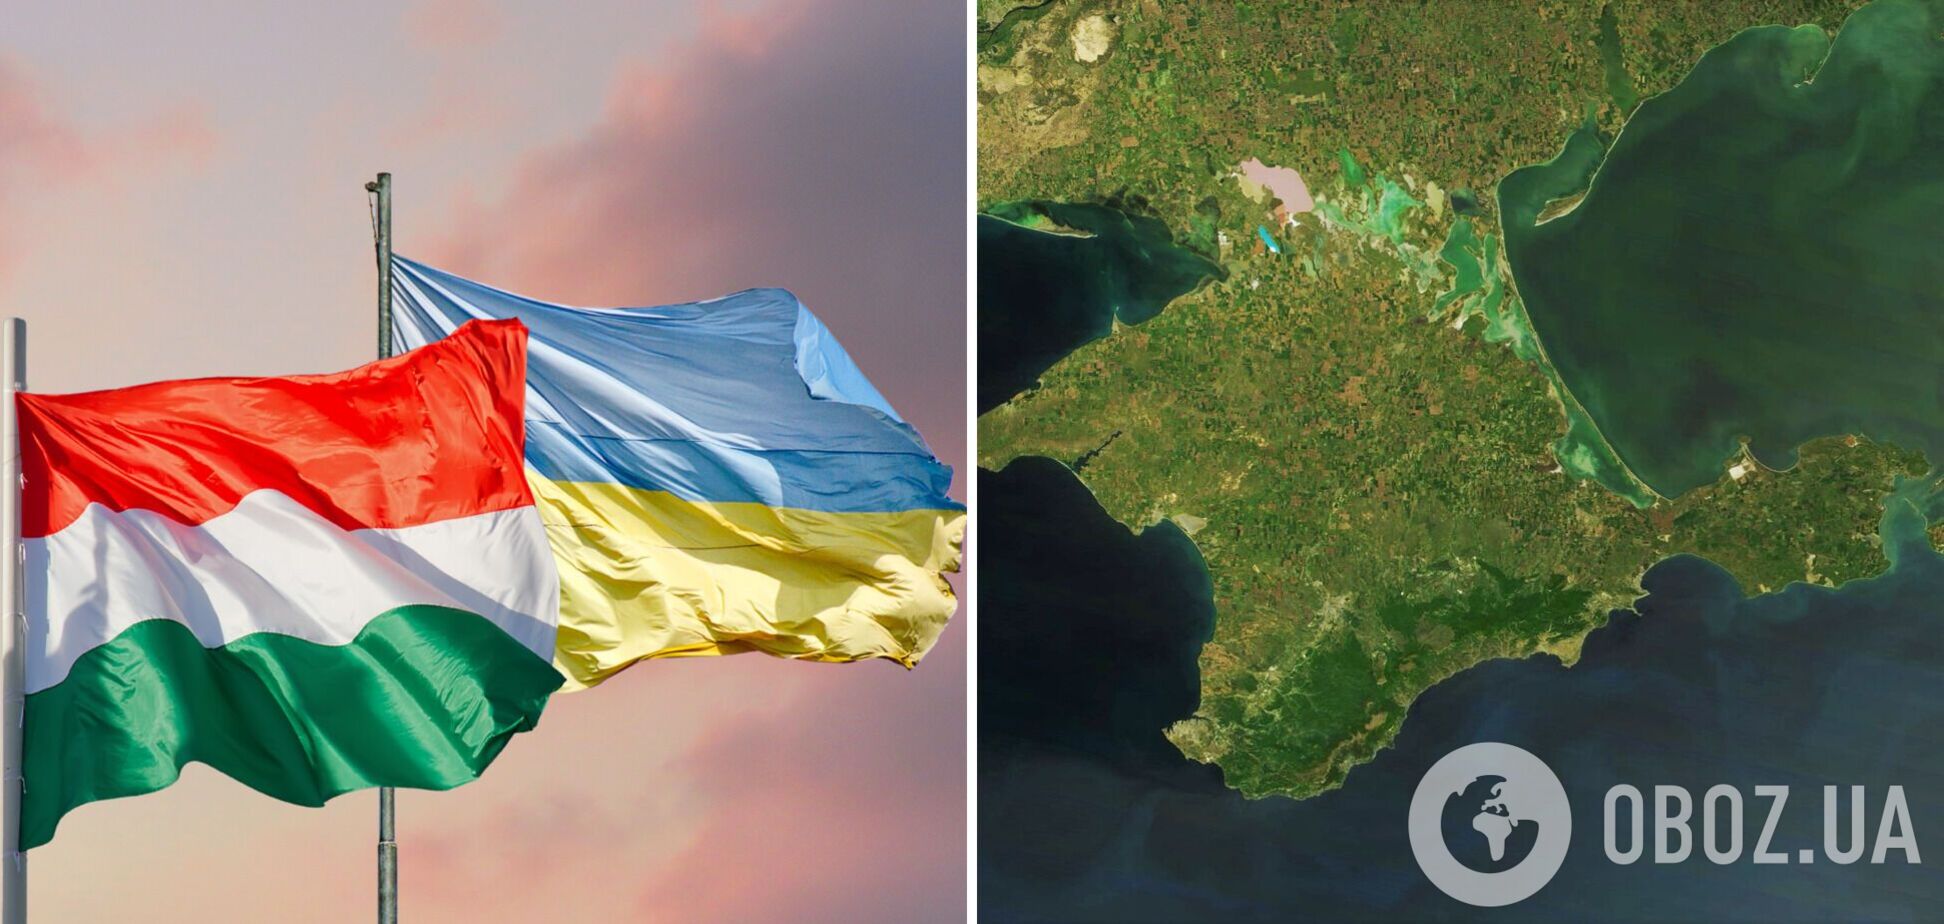 МИД Украины объявил Венгрии демарш из-за видео с картой Украины без Крыма: все детали скандала